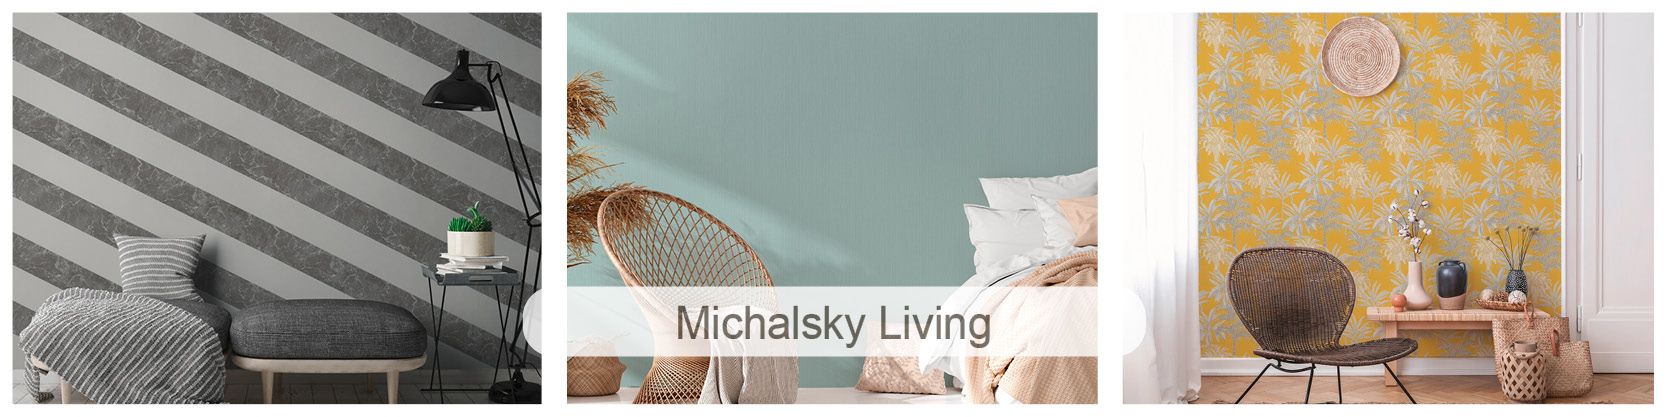 Banner Tapeten Michalsky Living